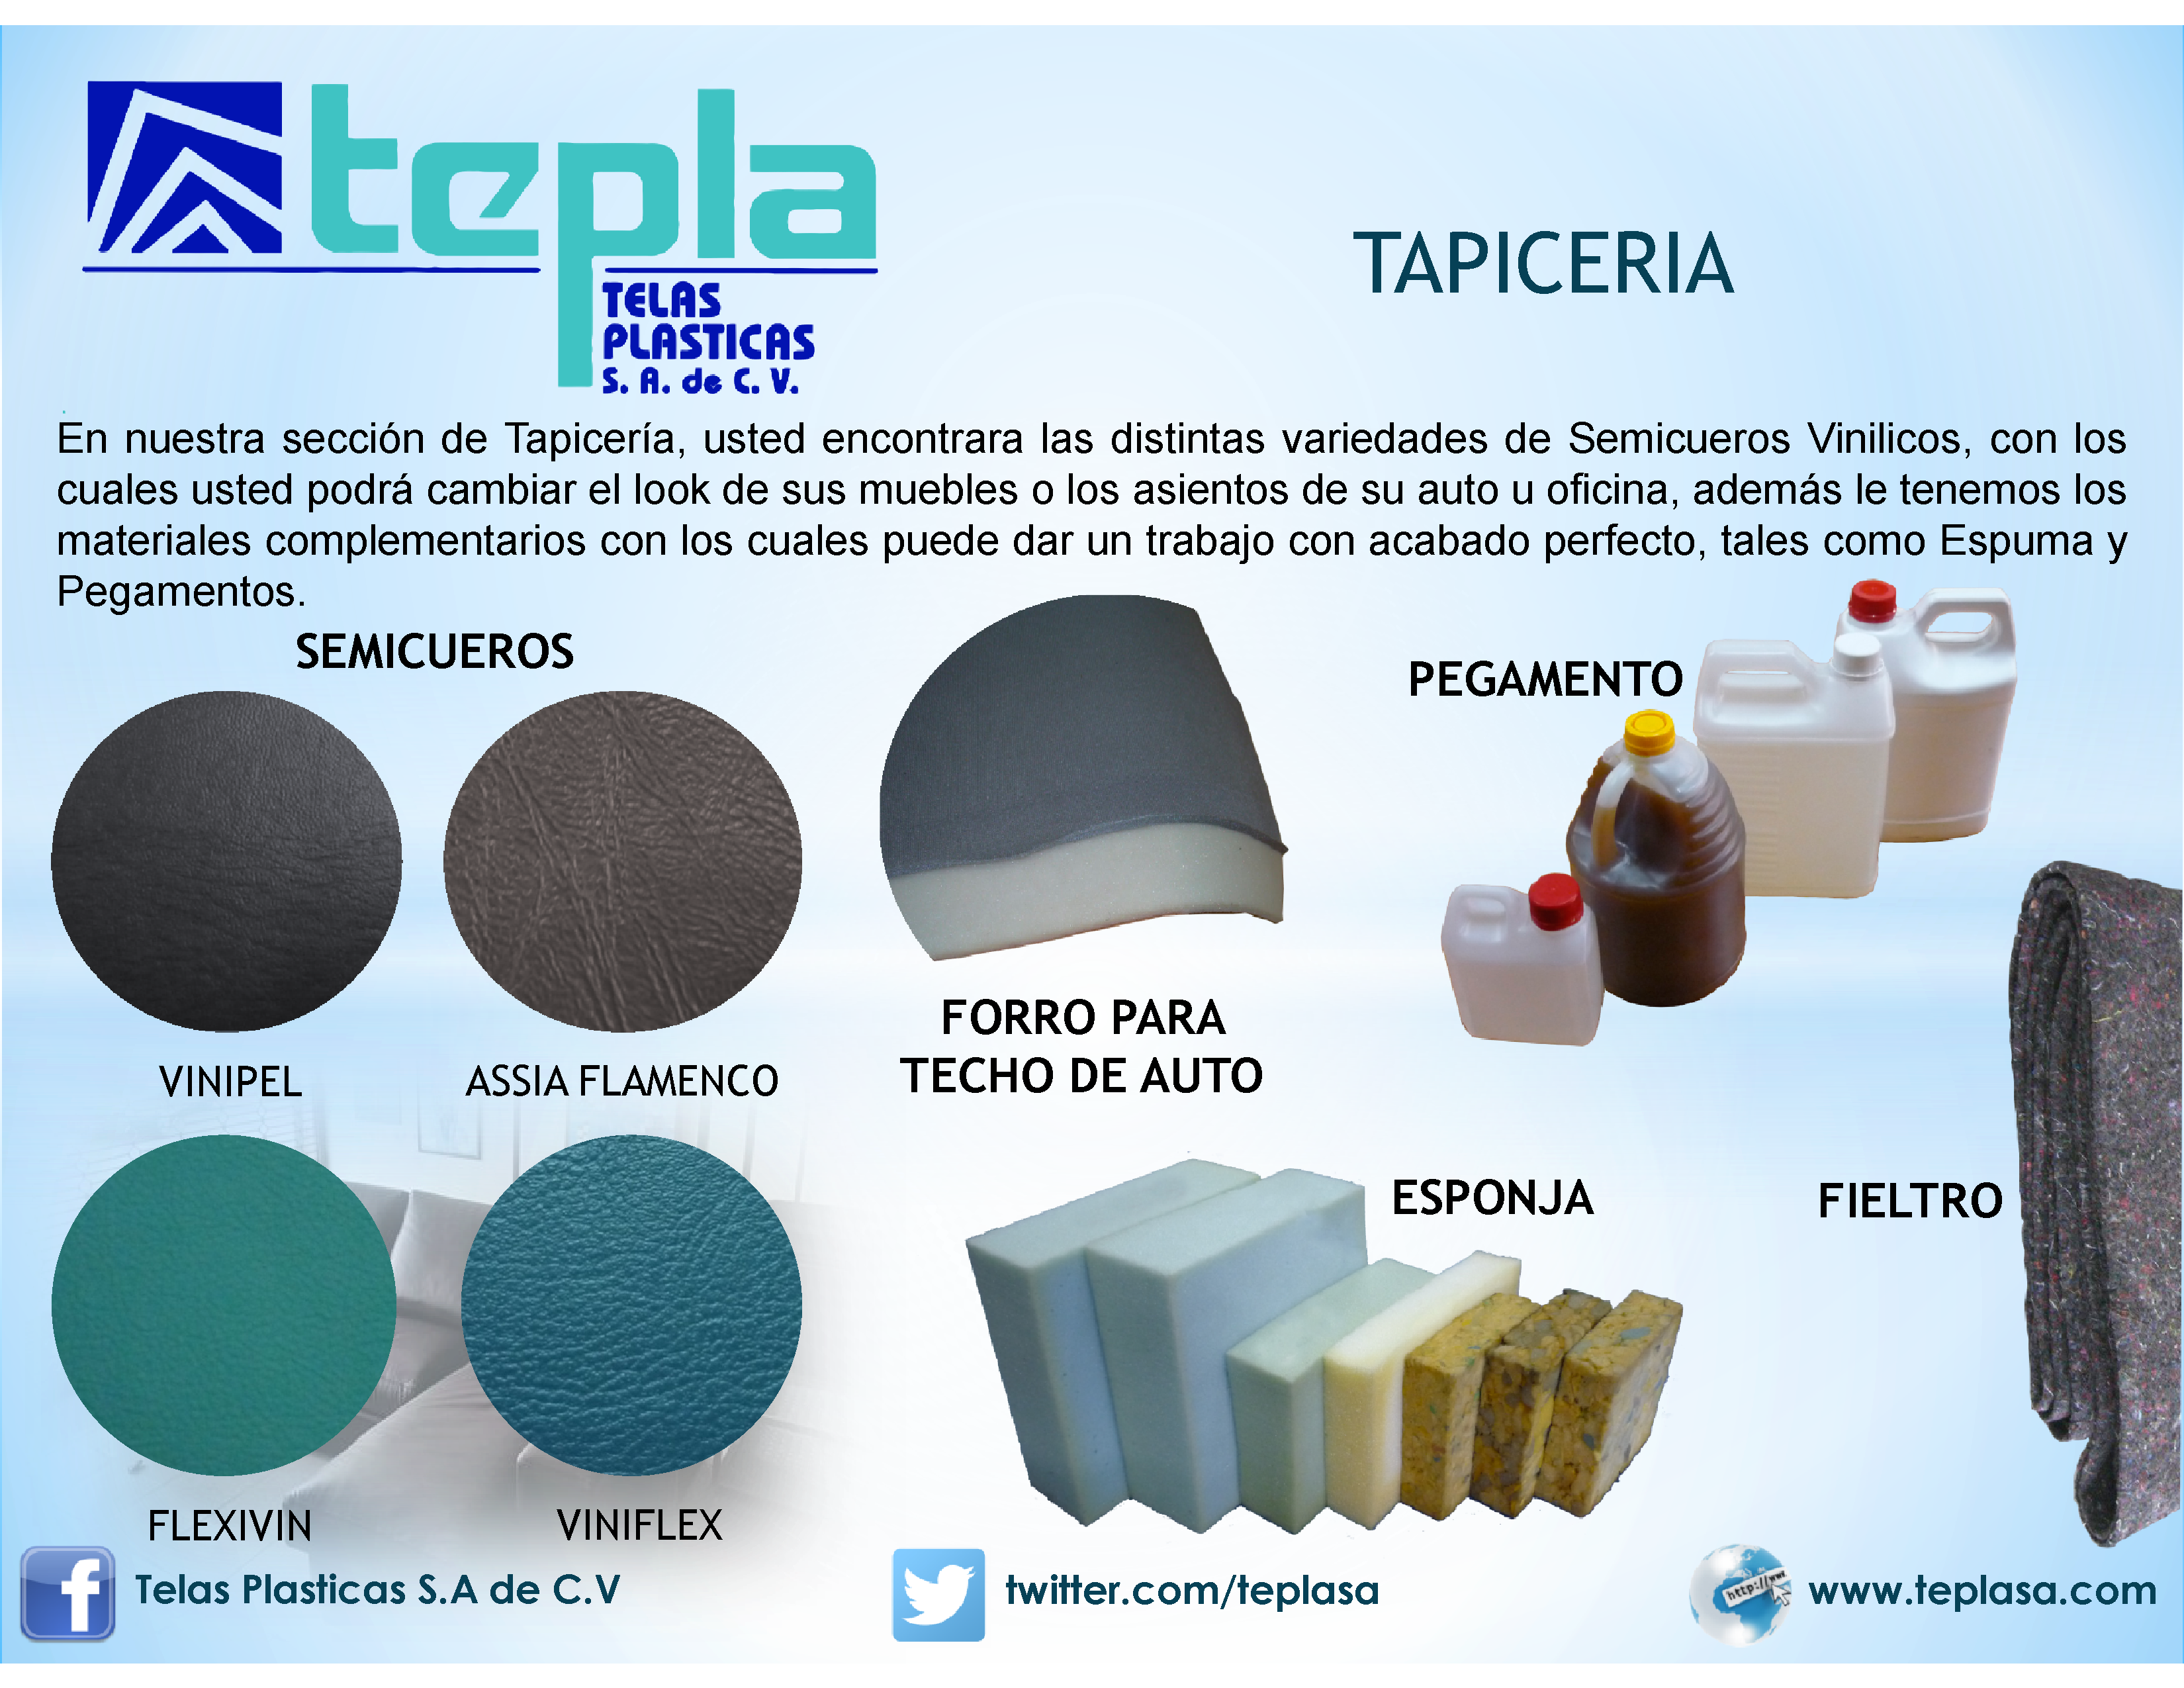 Telas Plasticas on Twitter: "#TelasPlasticas Dale un toque diferente a tus  muebles con nuestros complementos de TAPICERIA. http://t.co/hkynPLFYoa" /  Twitter